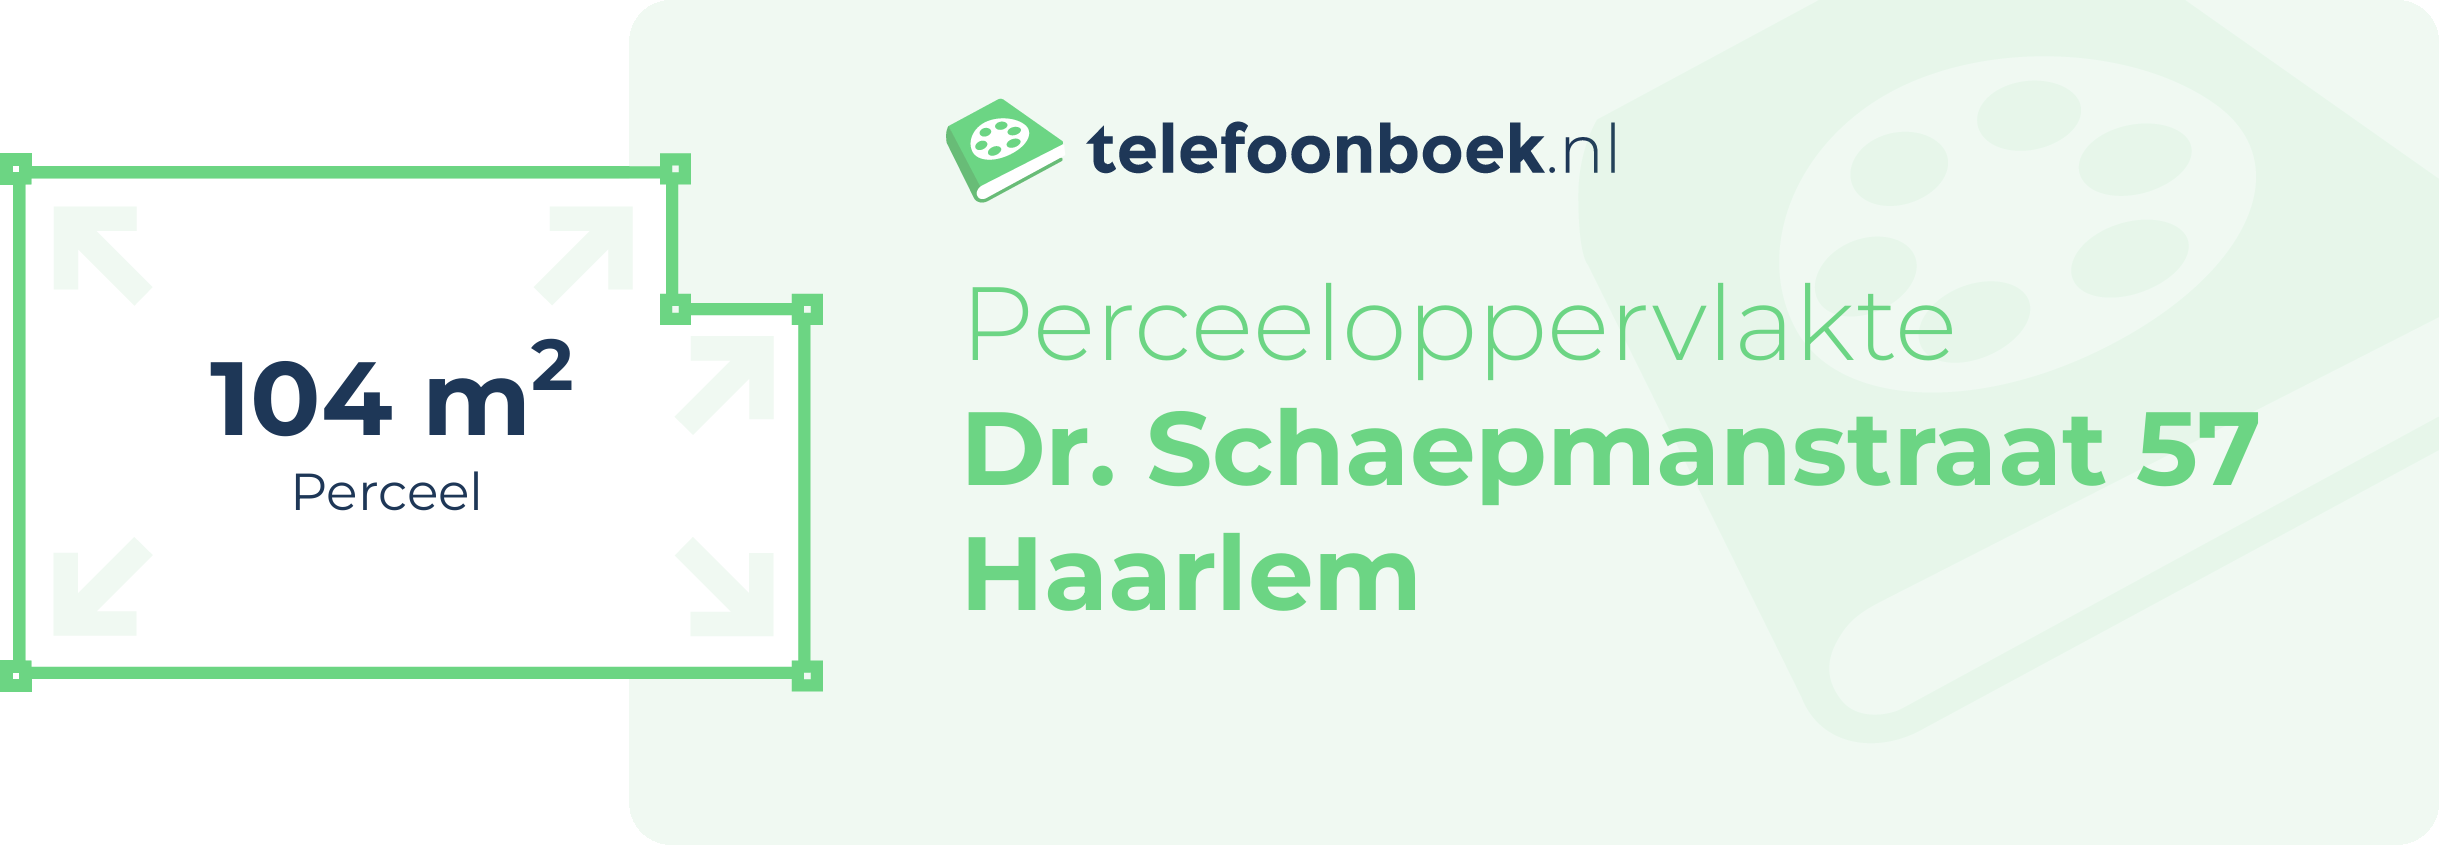 Perceeloppervlakte Dr. Schaepmanstraat 57 Haarlem